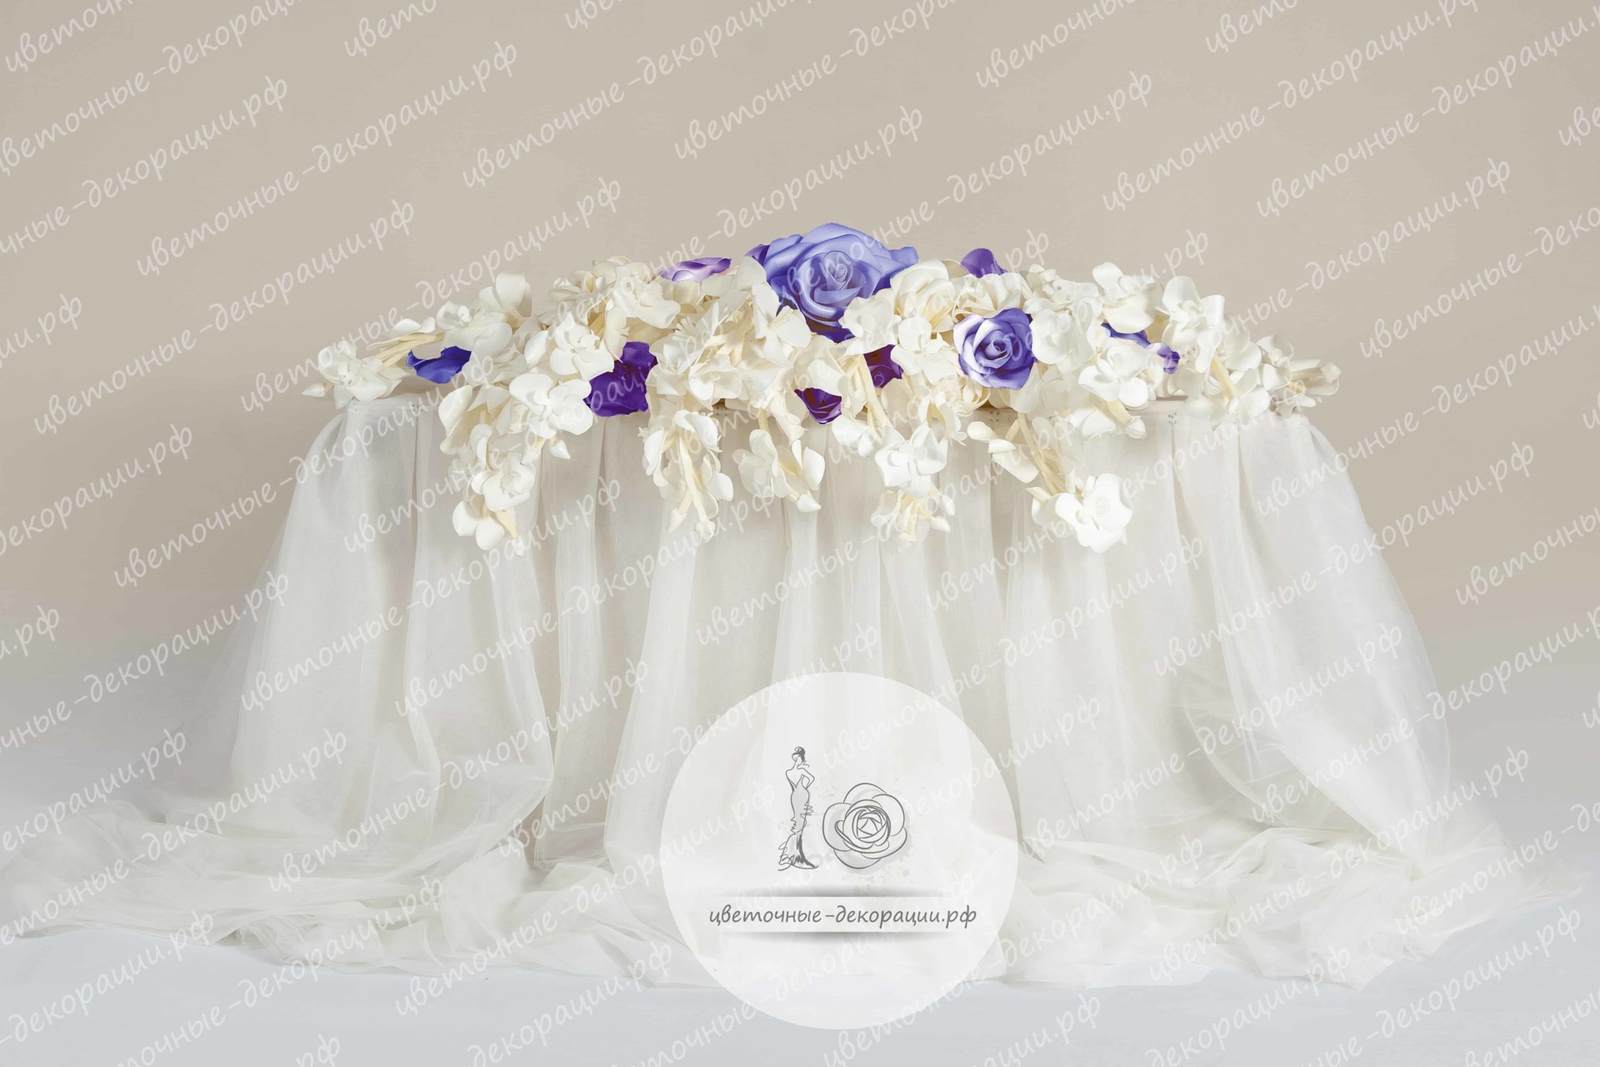 Оформление свадебного стола в фиолетовом и белом цвете